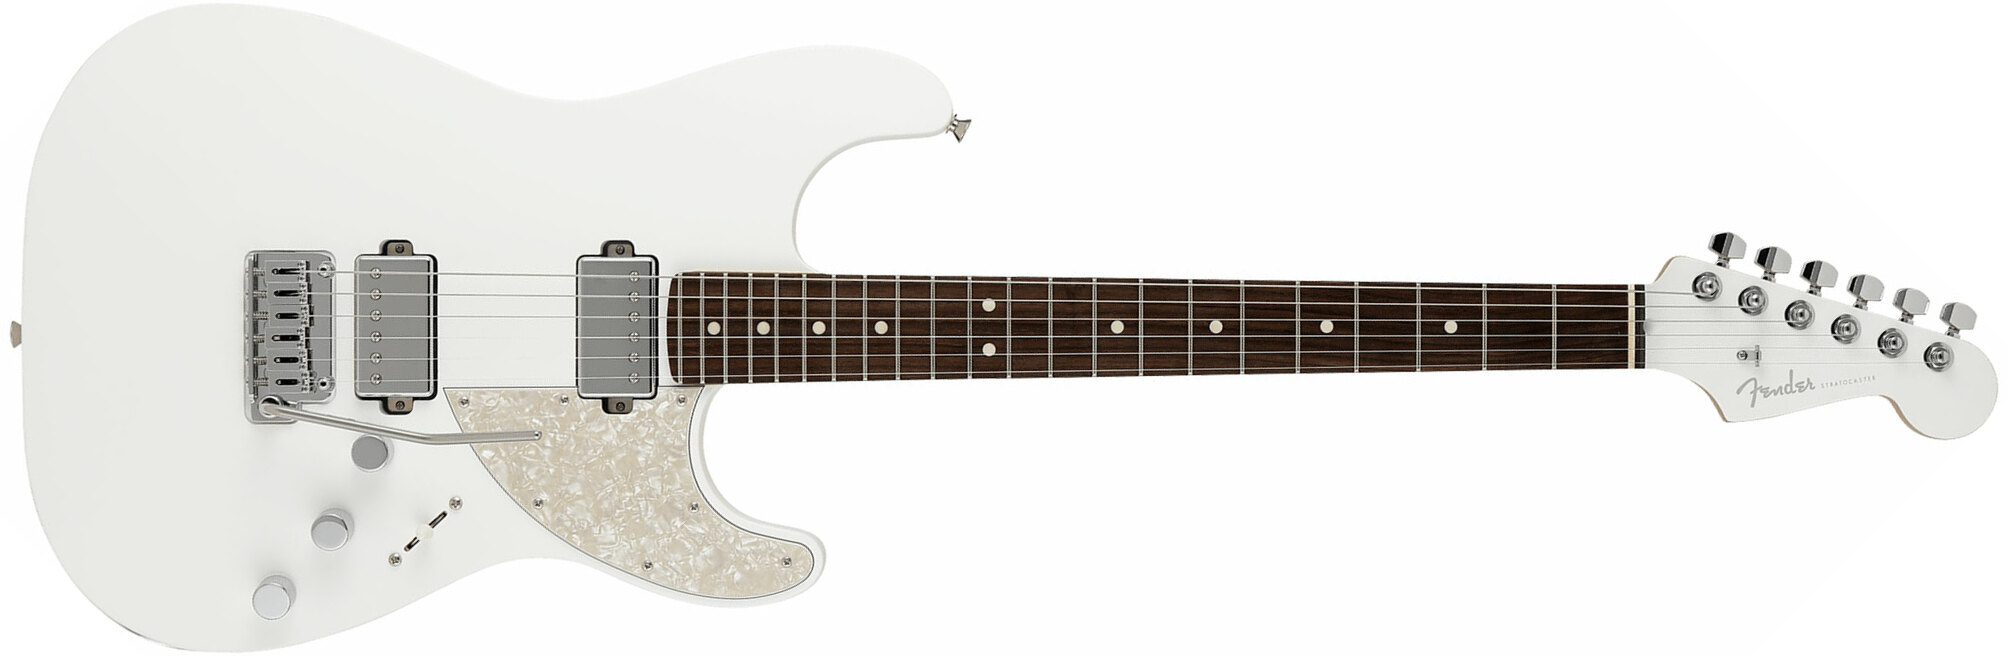 Fender Strat Elemental Mij Jap 2h Trem Rw - Nimbus White - Guitare Électrique Forme Str - Main picture